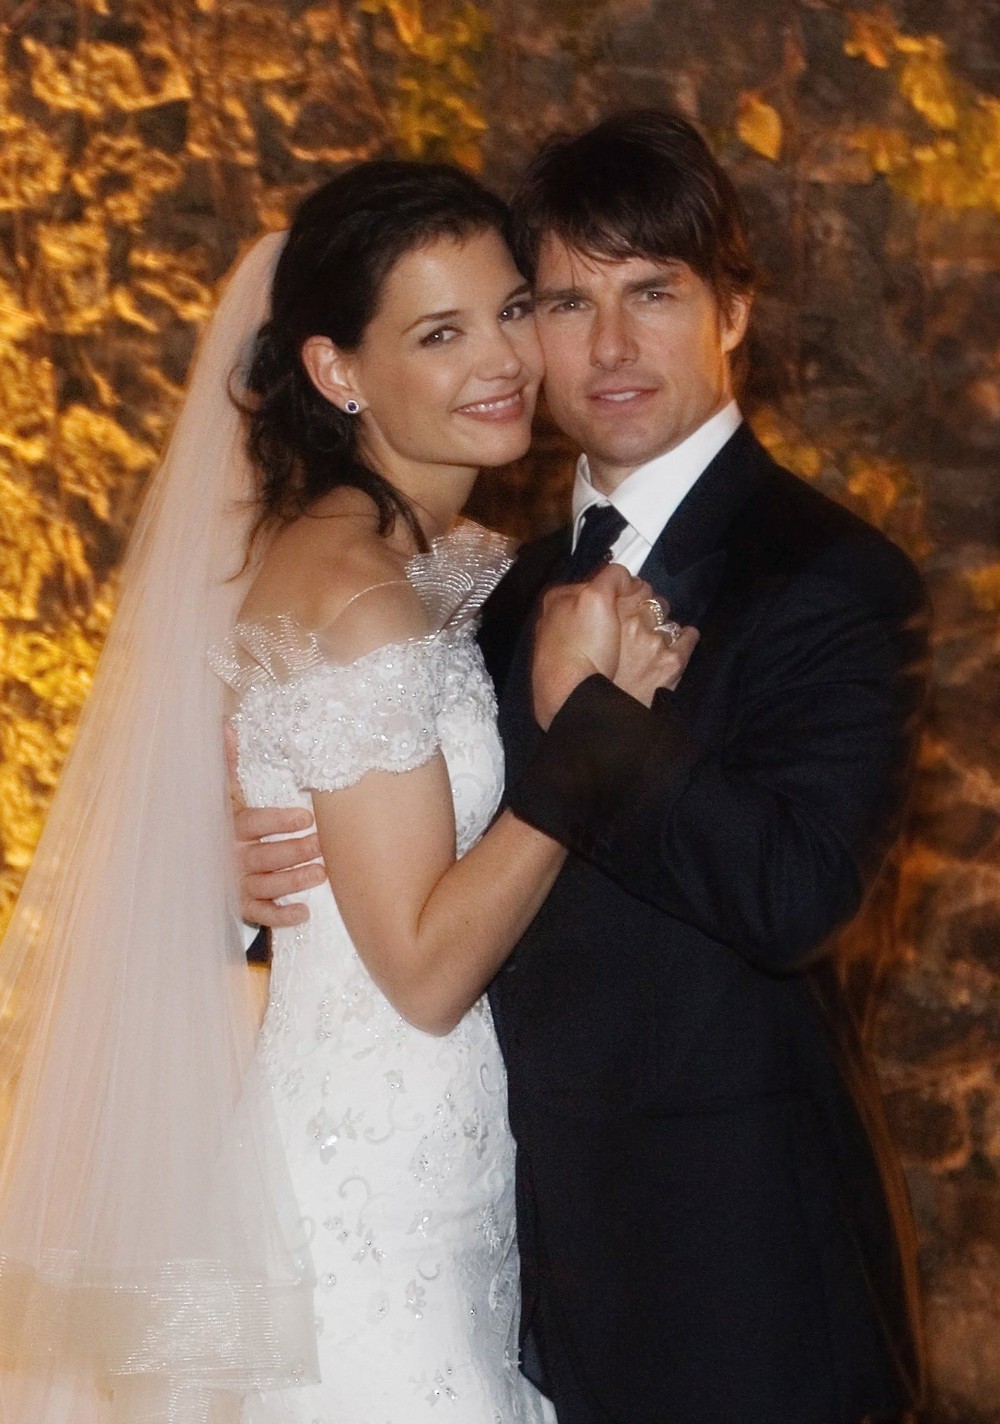 “Vợ cũ Tom Cruise” Katie Holmes: Những tưởng tìm thấy bình yên sau cuộc hôn nhân địa ngục hóa ra cũng chỉ có duyên nắm tay nhau 1 đoạn đường - Ảnh 3.